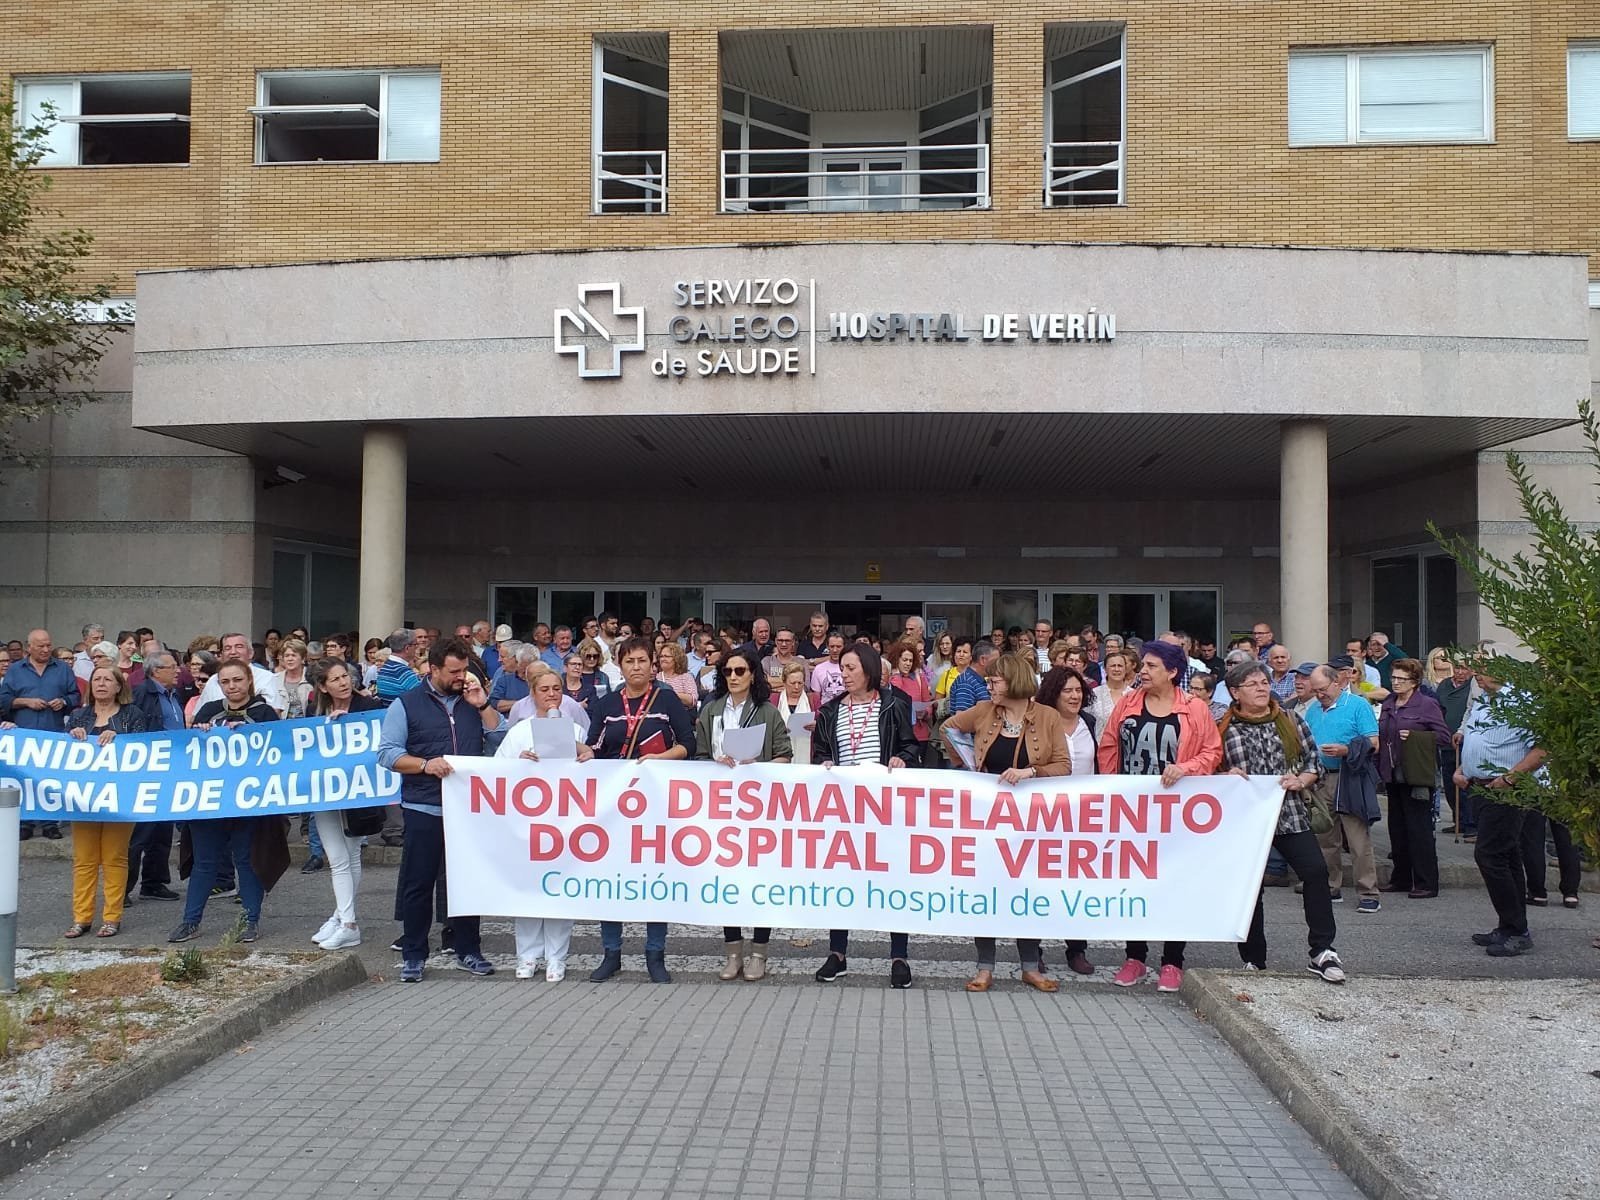 La sociedad verinesa apoya las protestas contra el cierre de servicios en el Hospital de Verín.